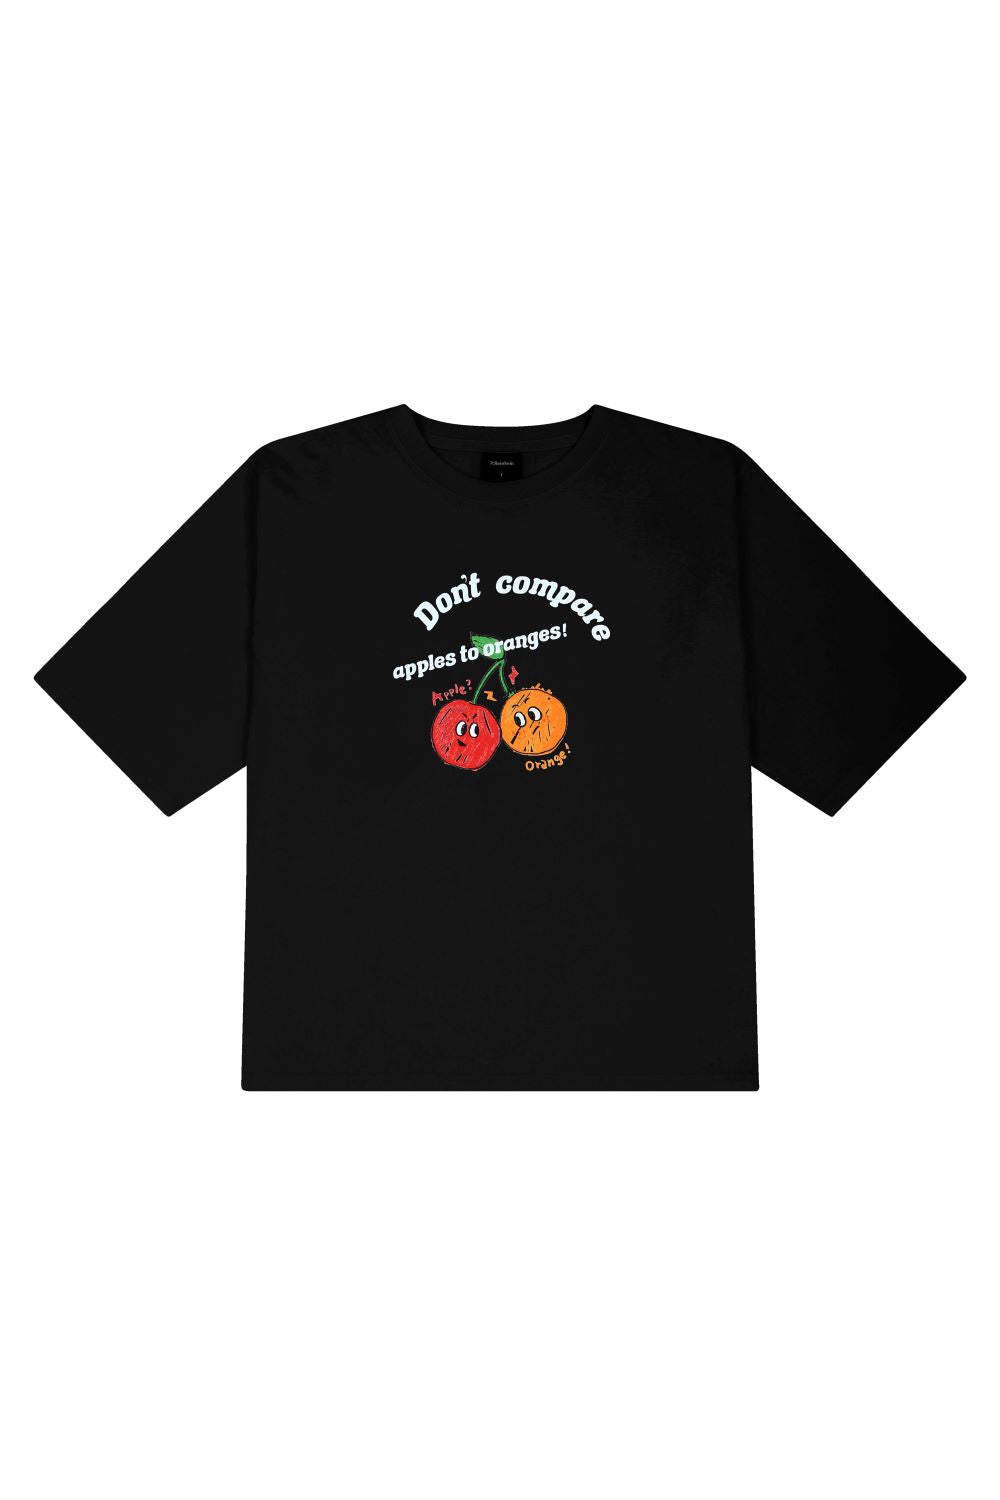 チェリーオーバーフィットTシャツ/black cherry overfit t-shirts – 60